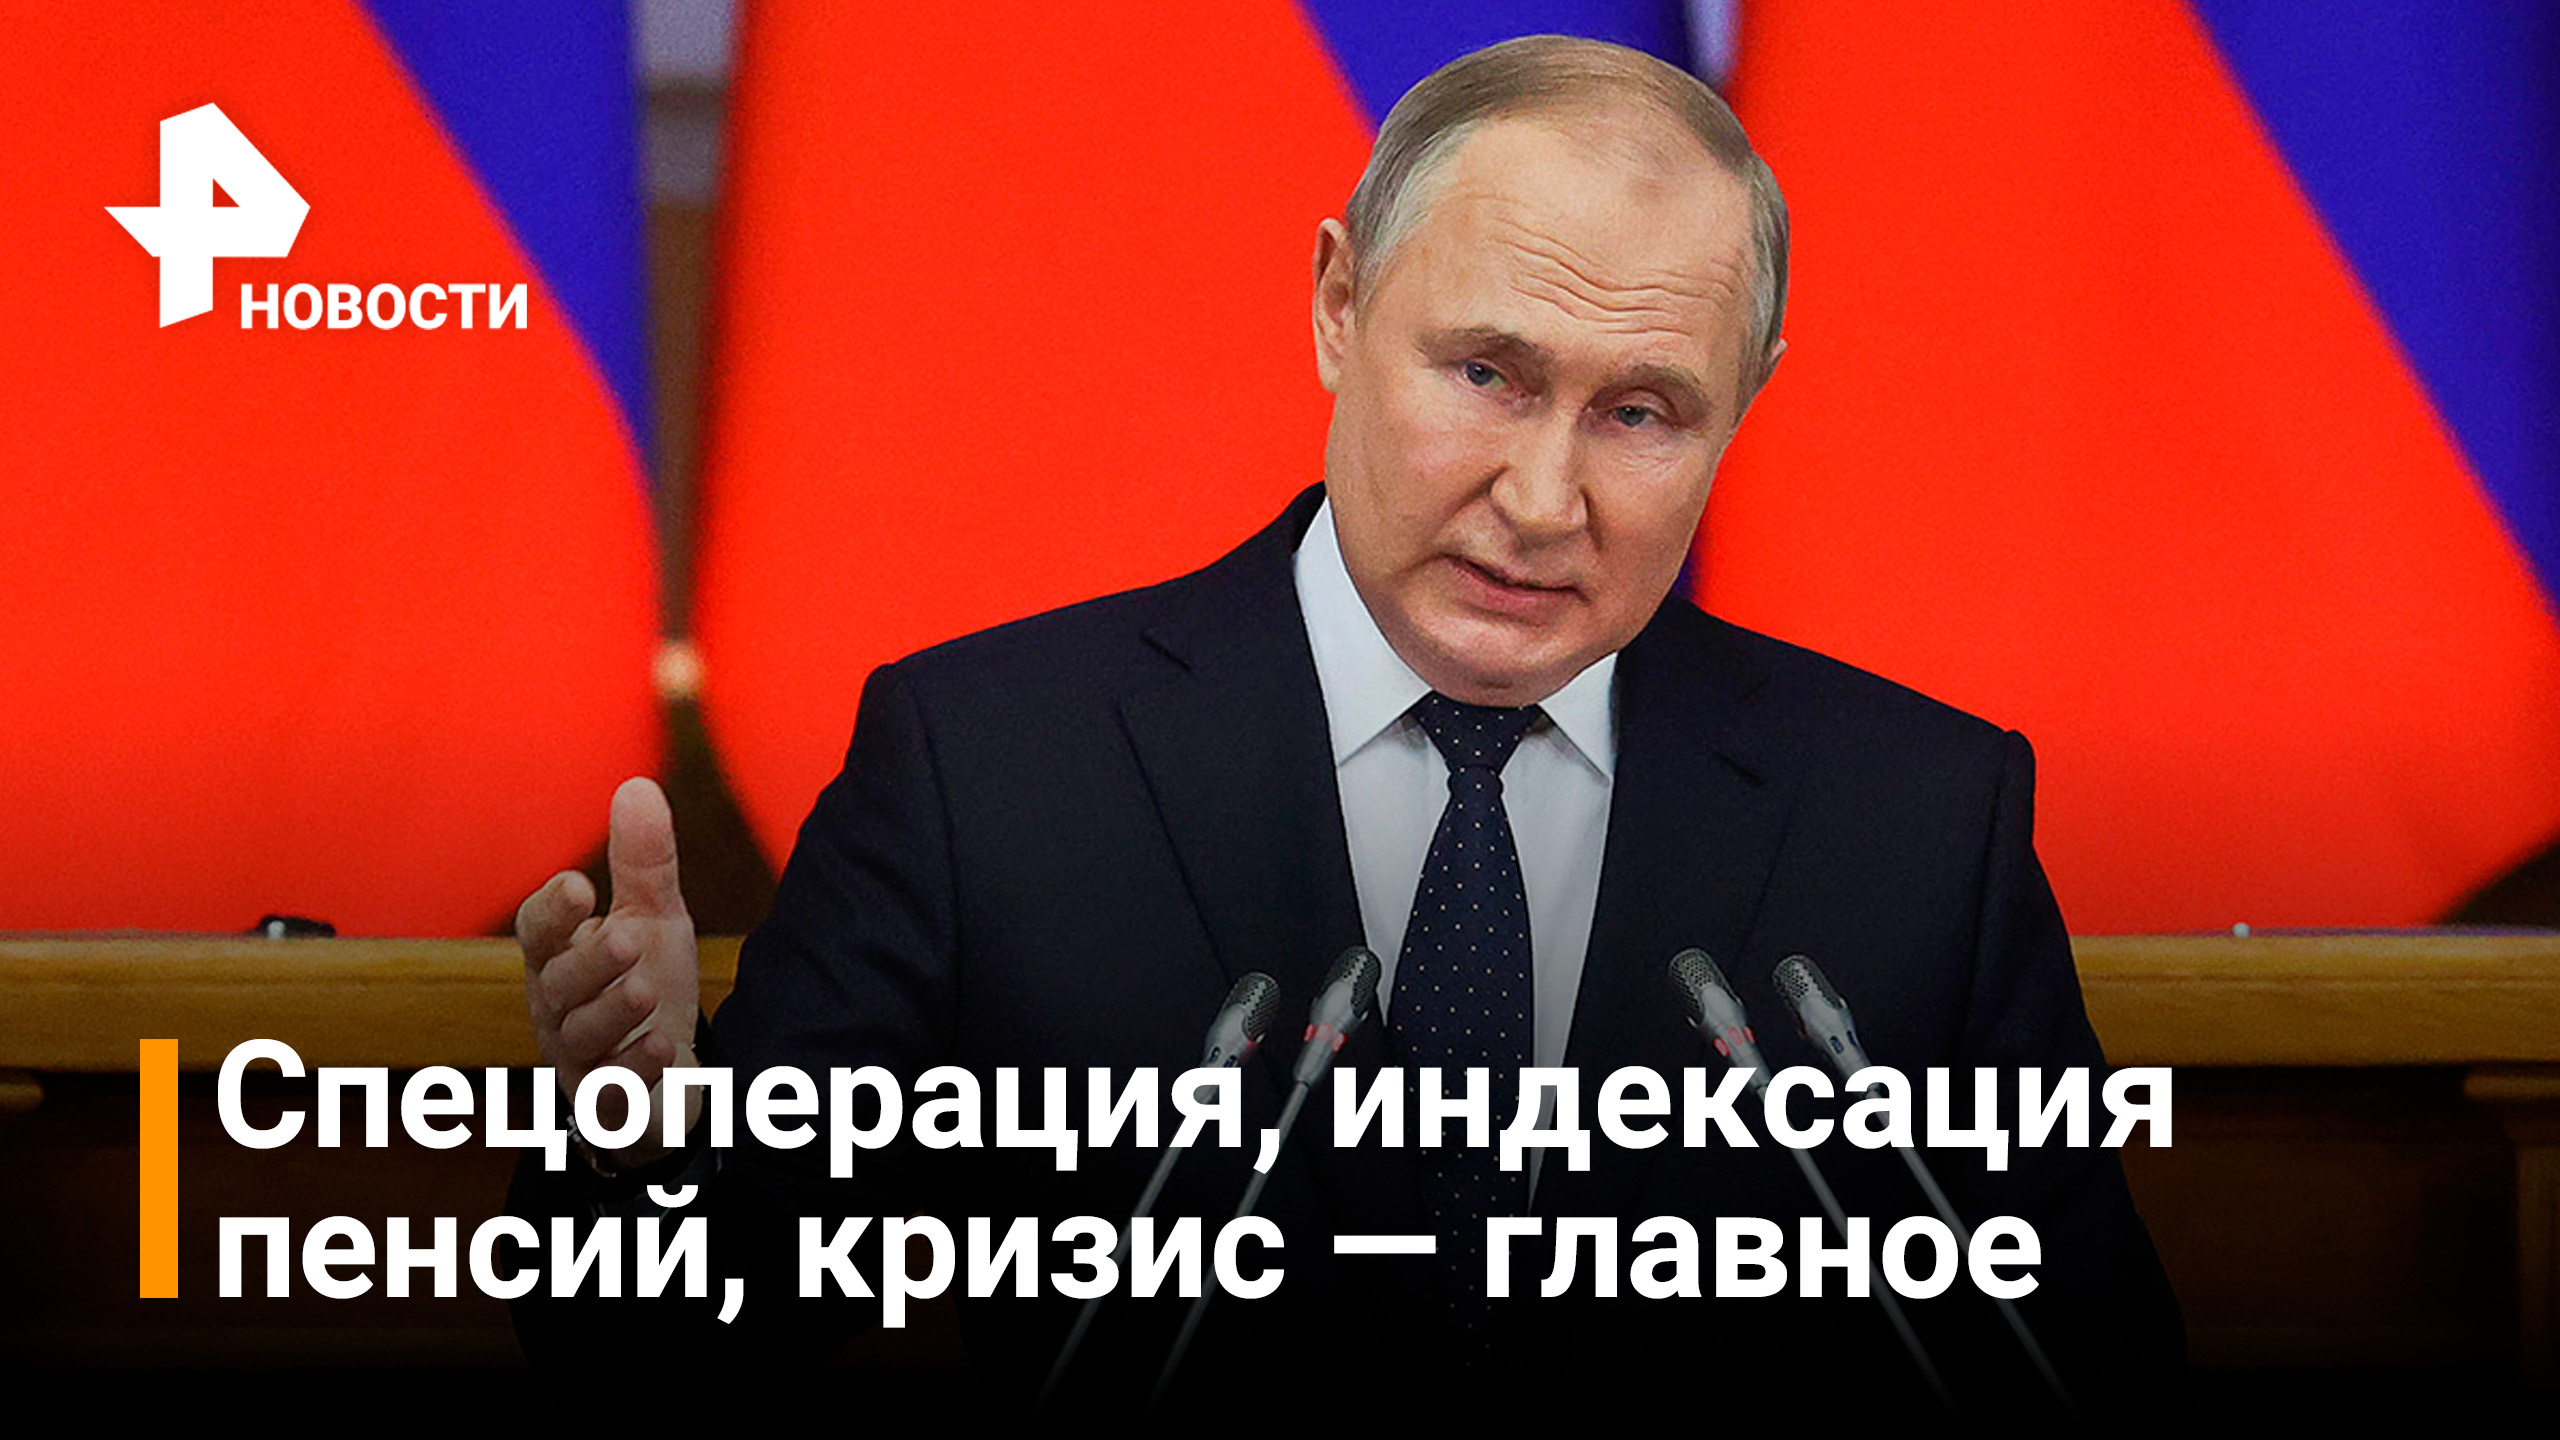 Удары будут молниеносными: Путин провел встречу с Советом законодателей / Новости РЕН